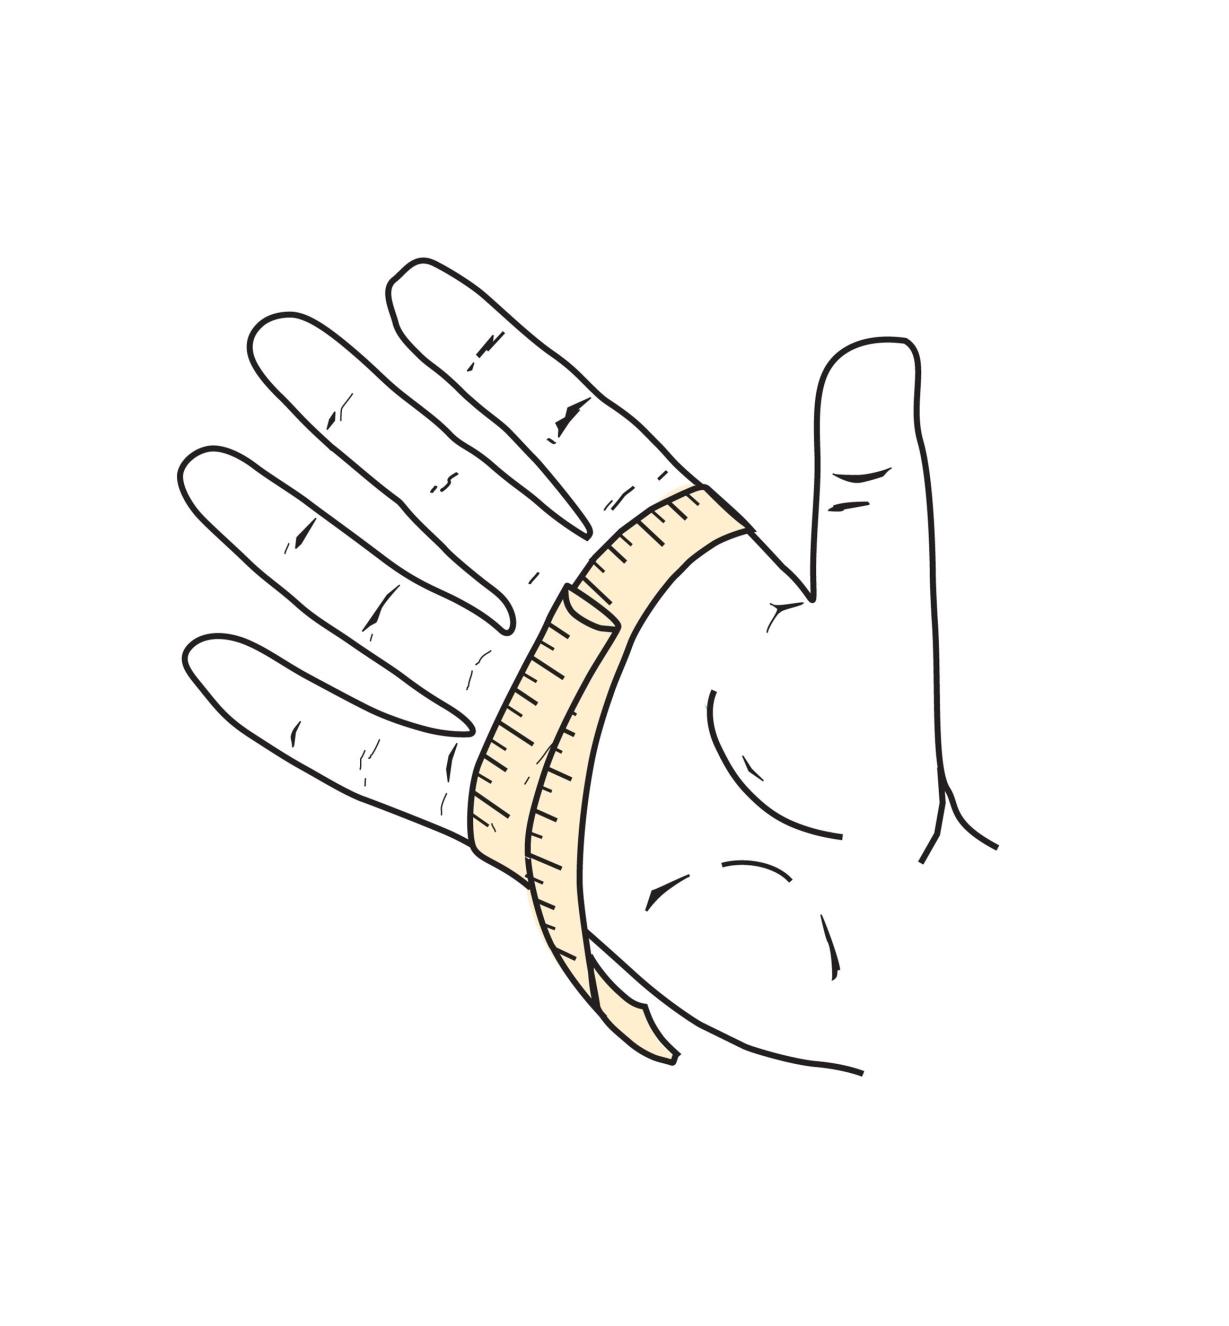 Illustration montrant la paume d'une main enroulée d'un ruban à mesurer